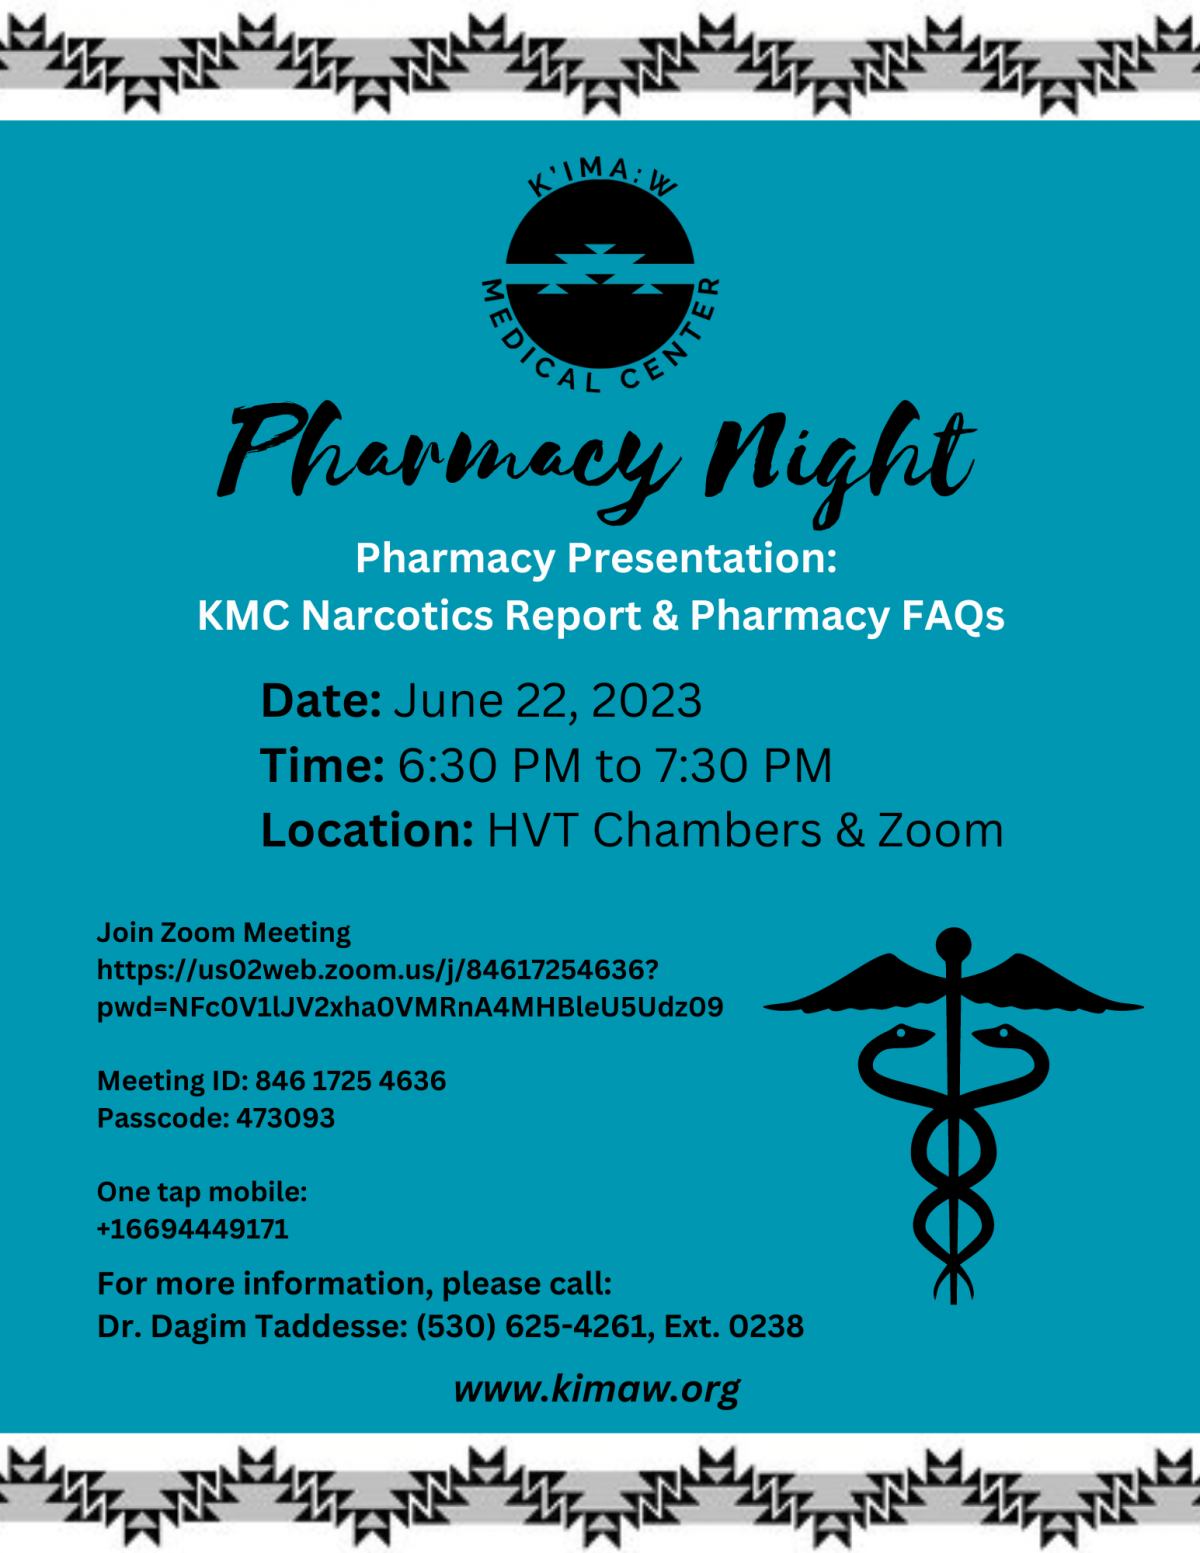 Pharmacy Night: June 22, 2023